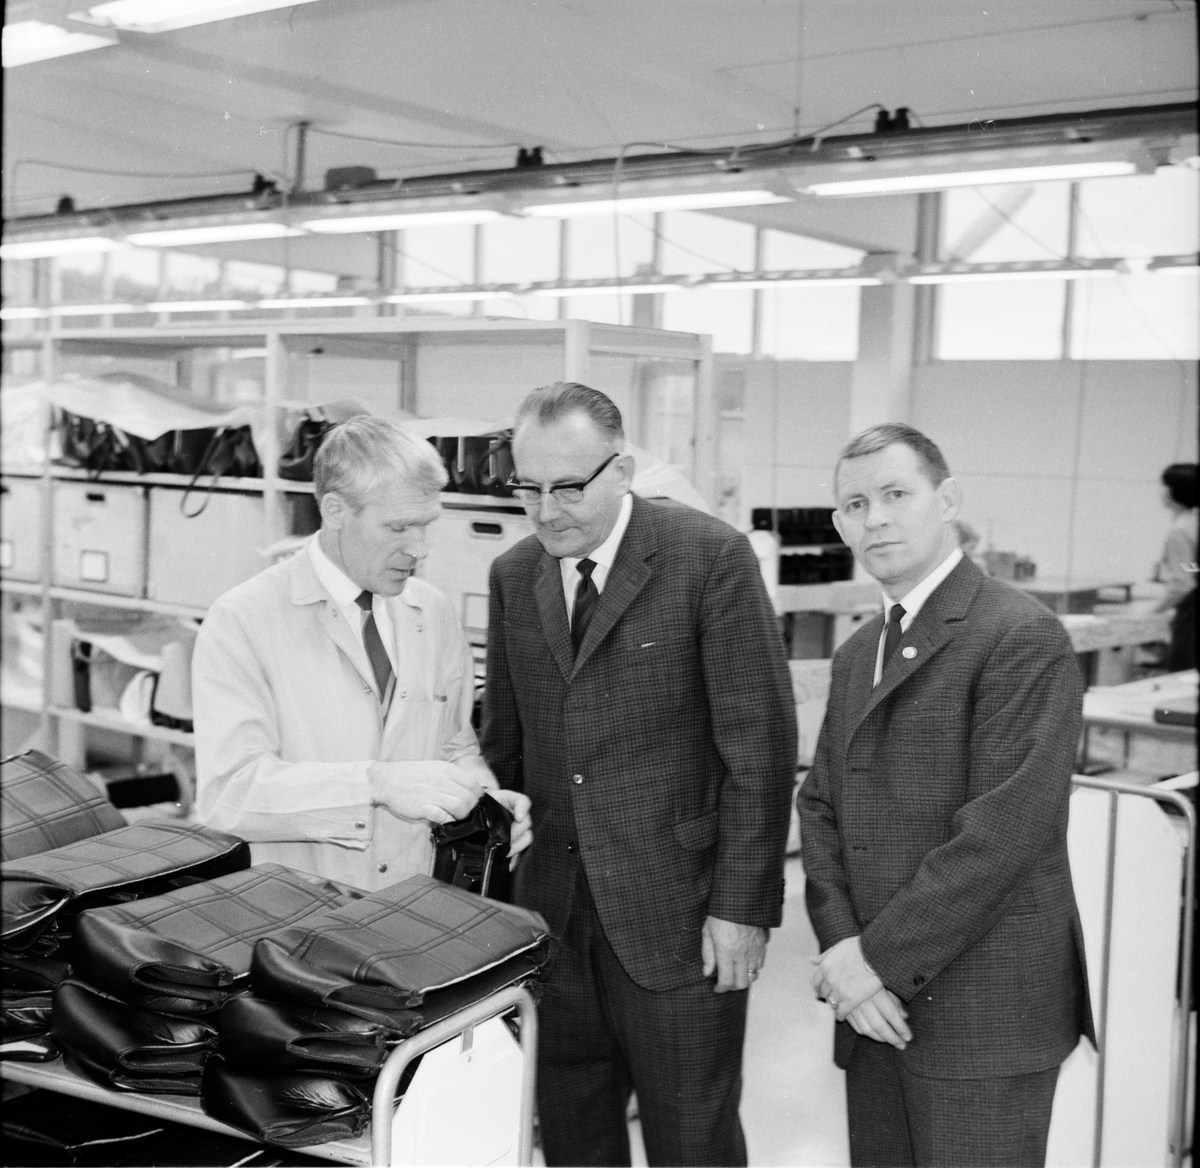 Visning av väskfabriken.
November-1967